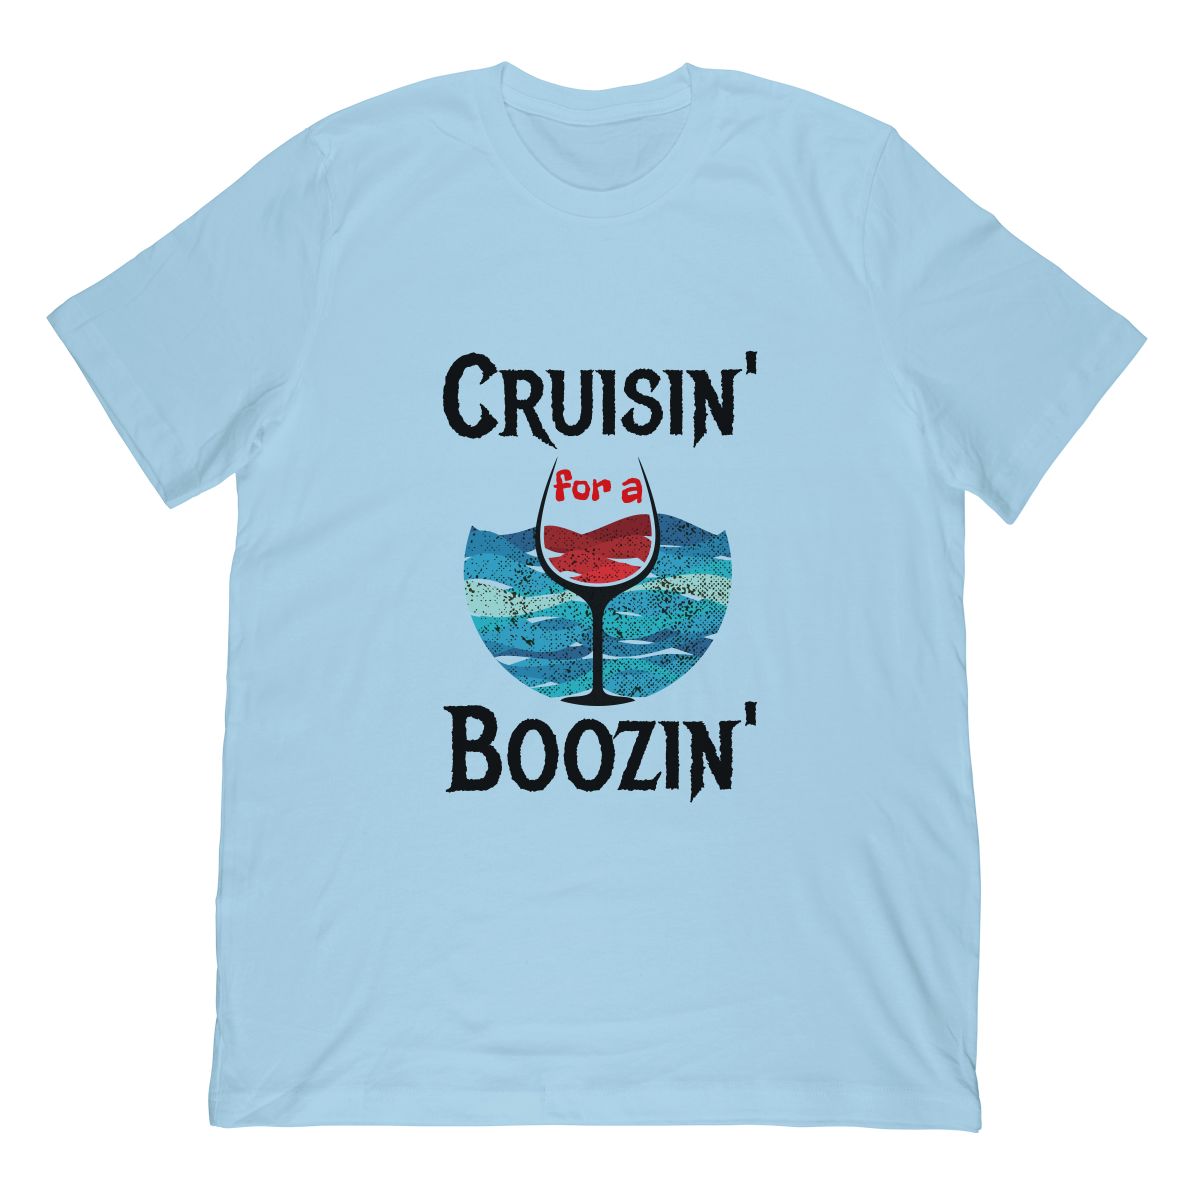 Cruisin’ For A Boozin’ Cruise Ship Tshirt